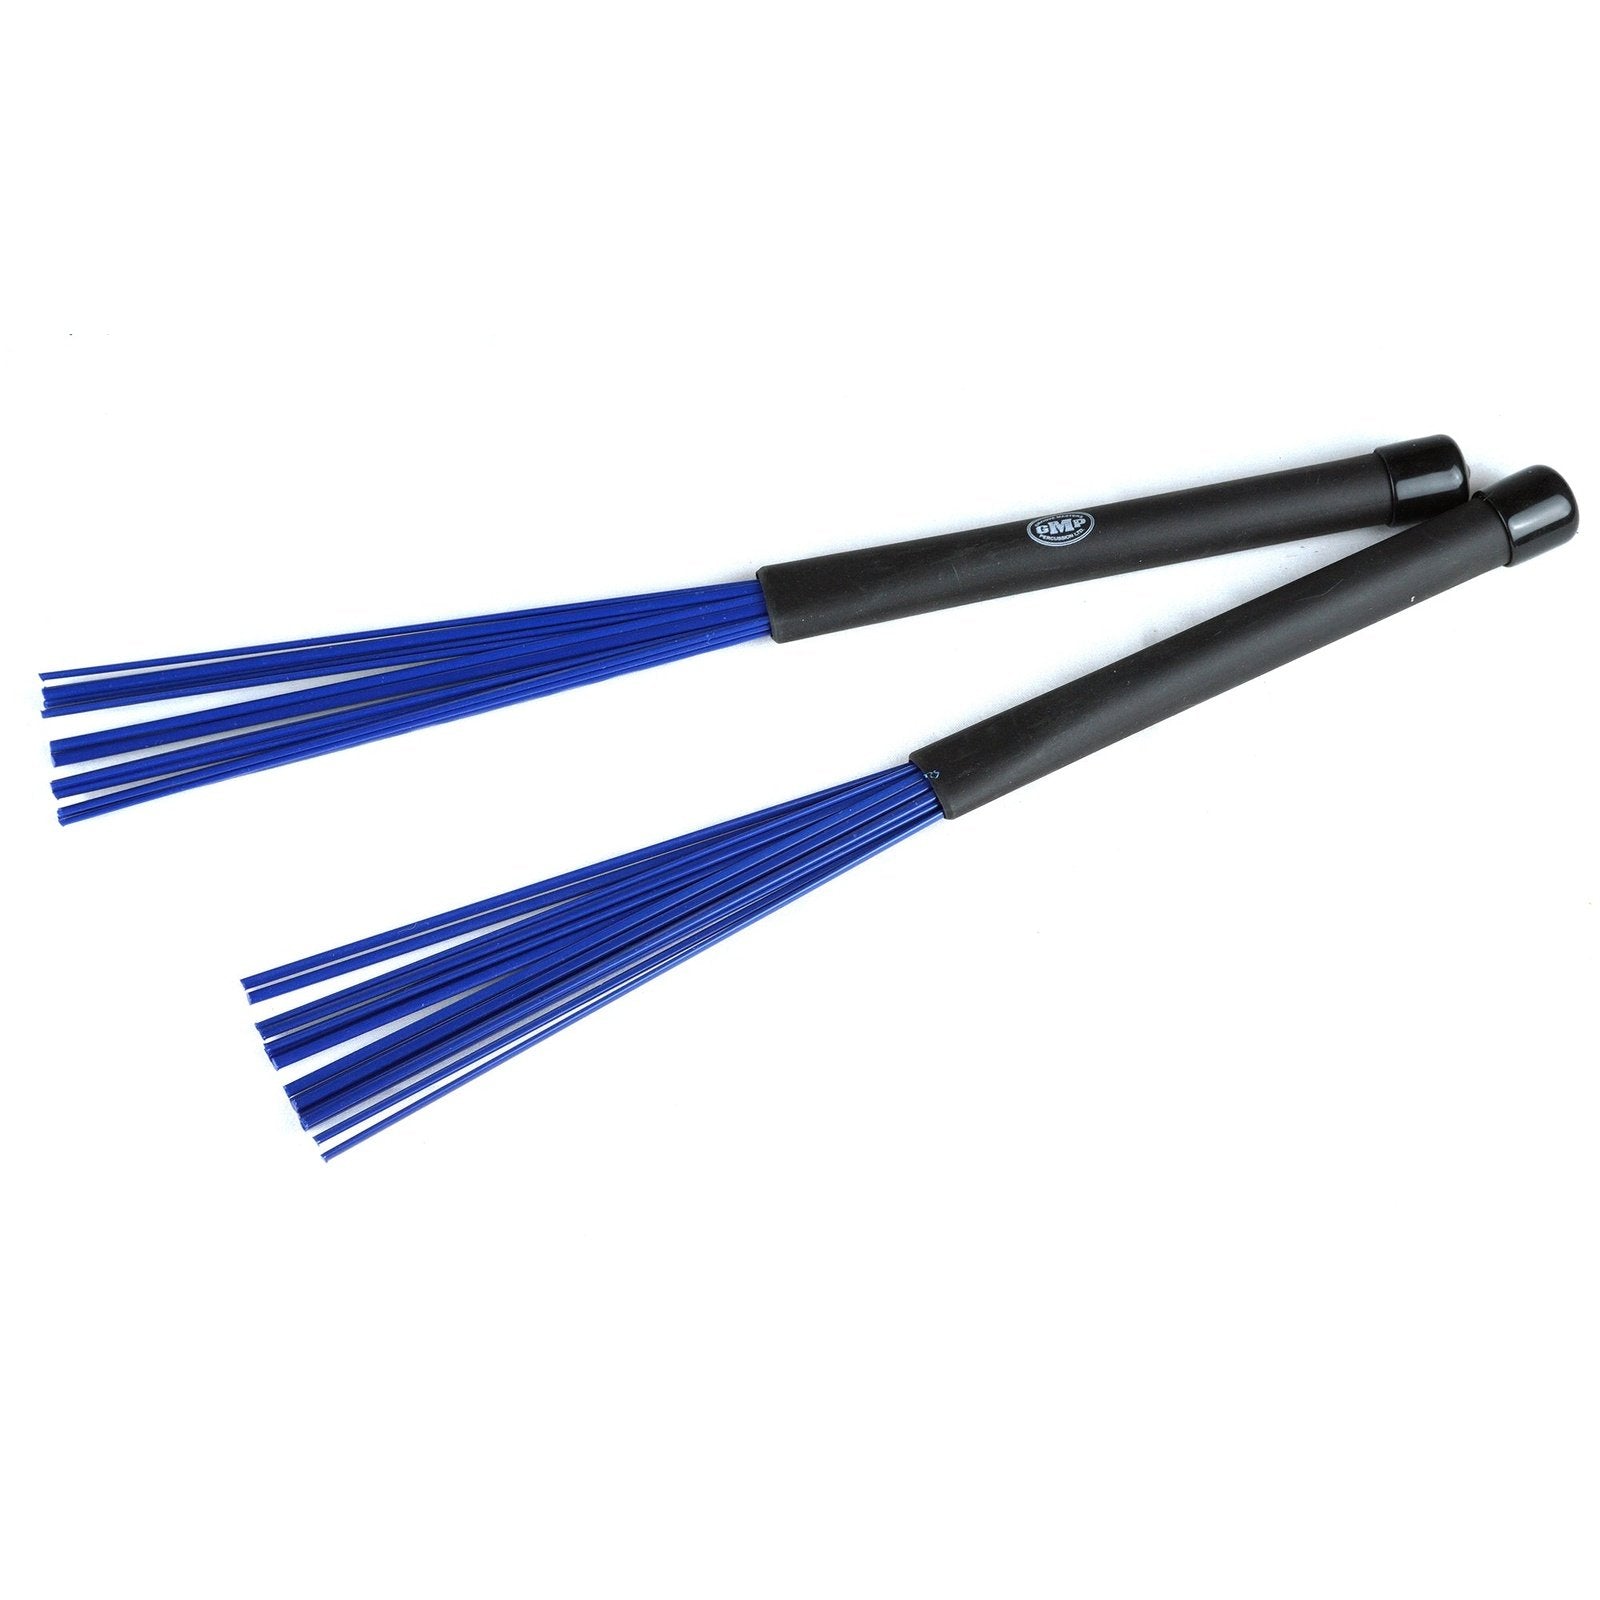 Plastic Brushes MAL-SV602, MAL-SV603